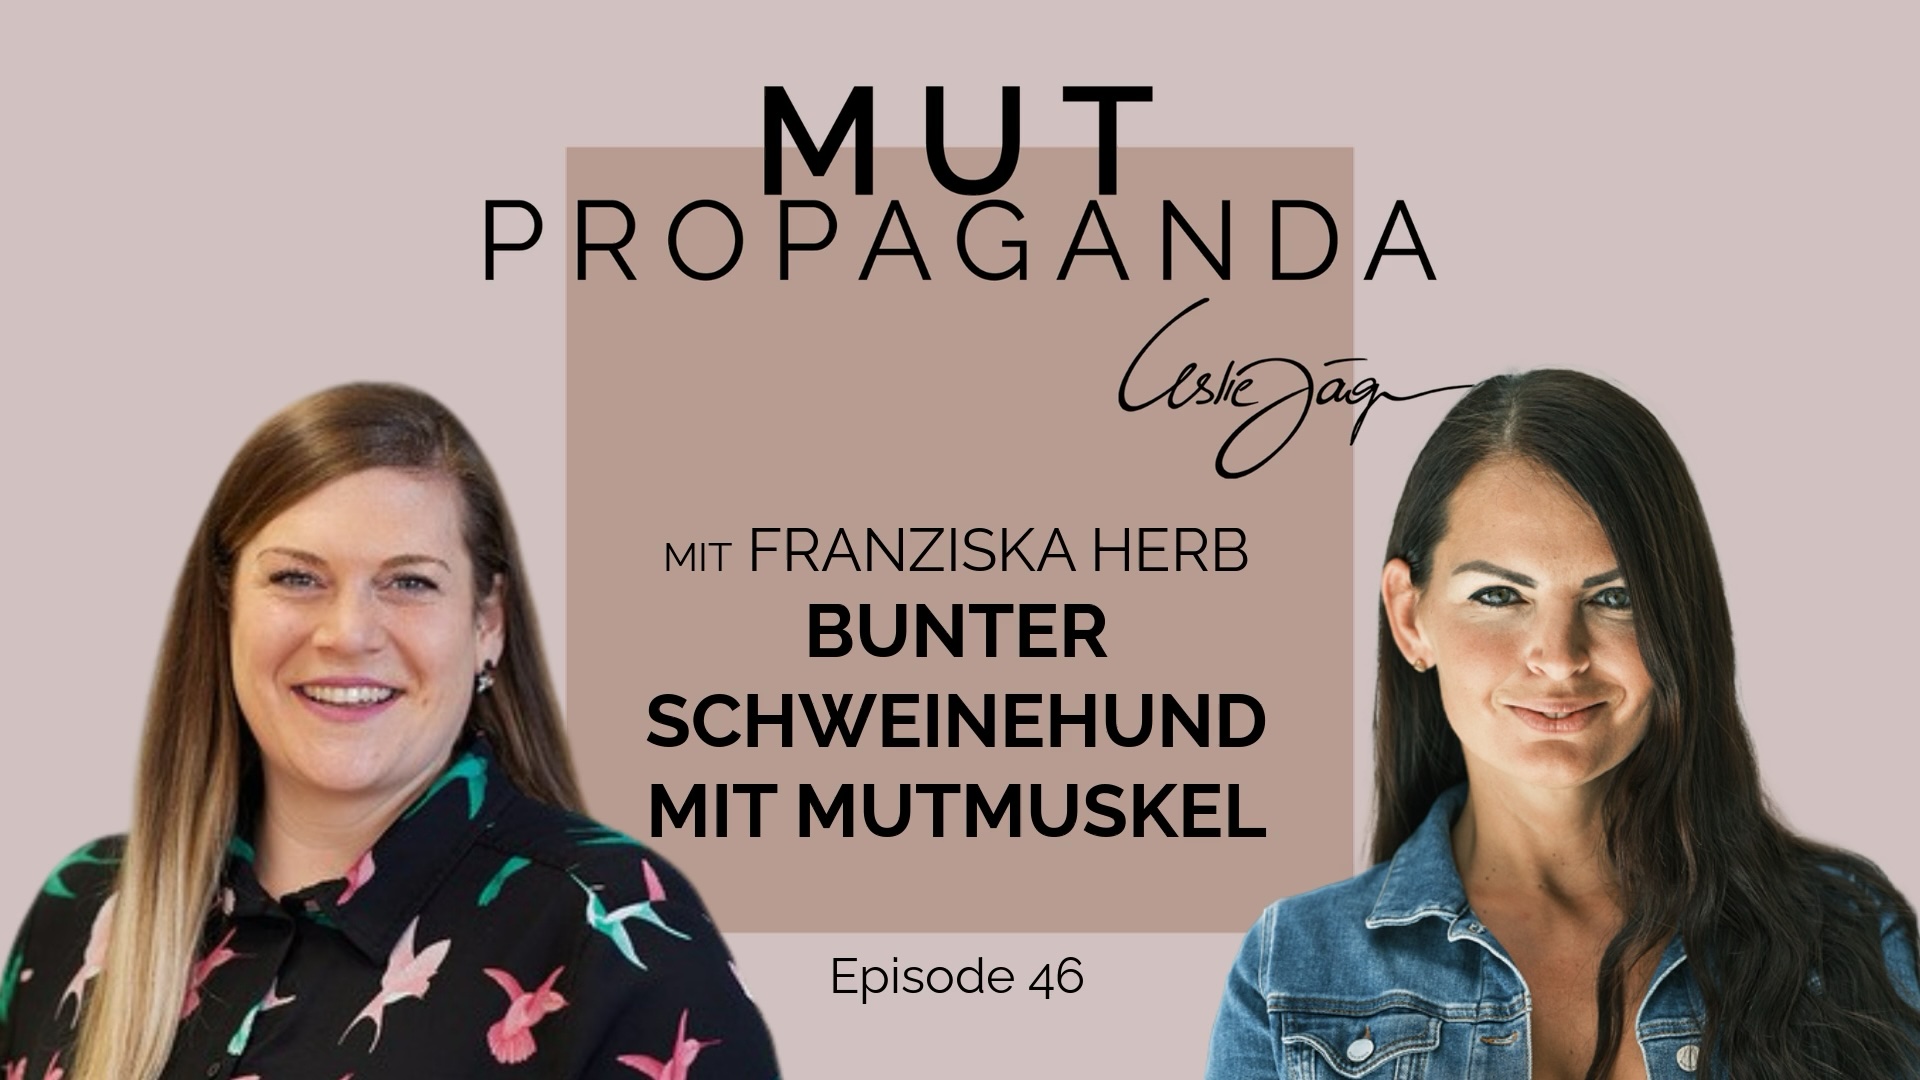 Bunter Schweinehund mit Mutmuskel - im Interview mit Franziska Herb